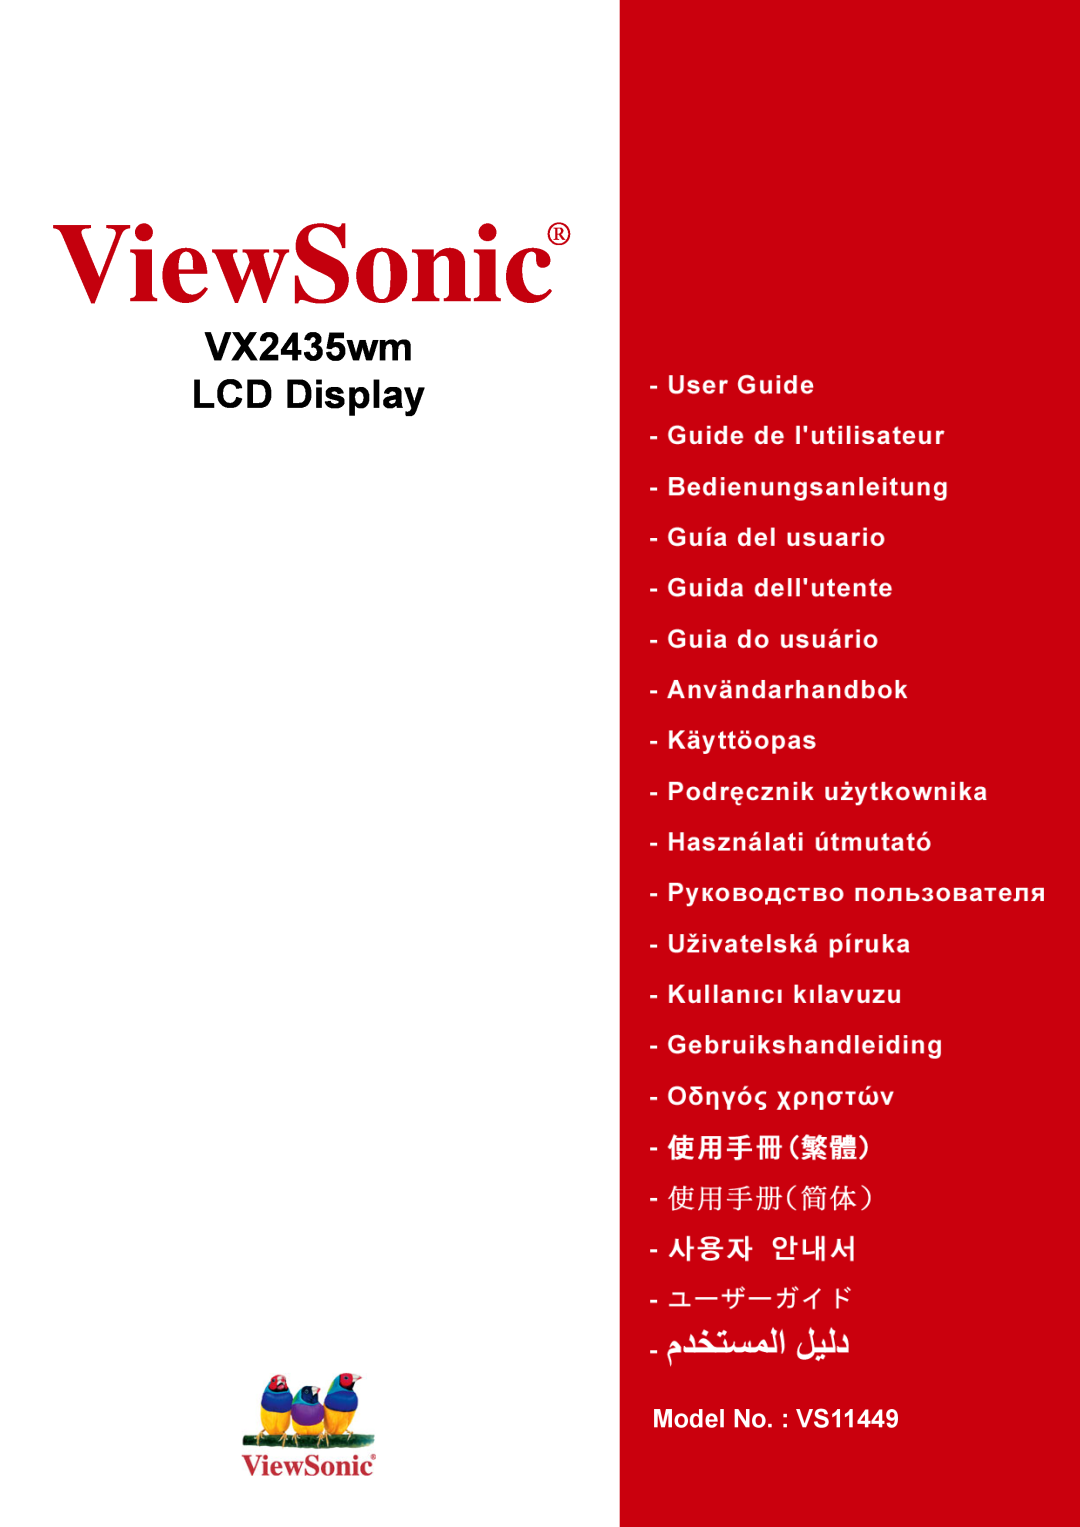 ViewSonic VX2435WM manual ViewSonic, VX2435wm LCD Display, Model No. : VS11449 